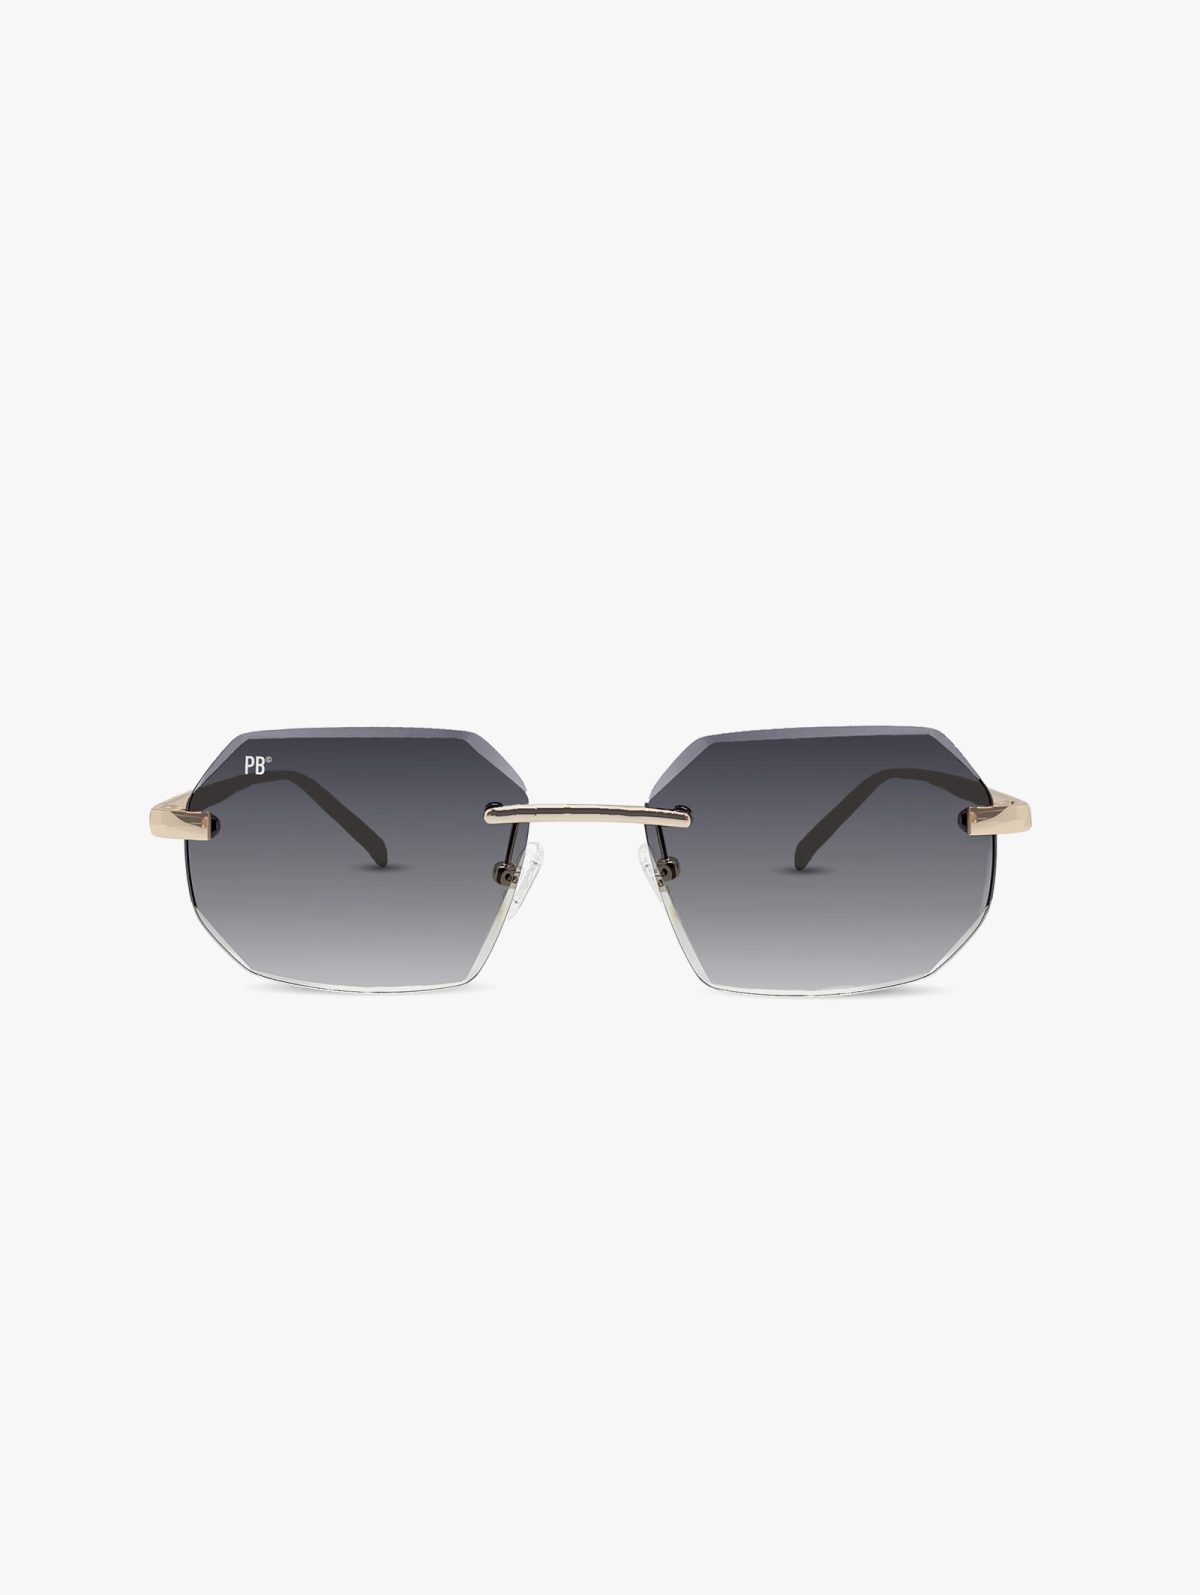 Sierra 2023 Zonnebril PB Sunglasses